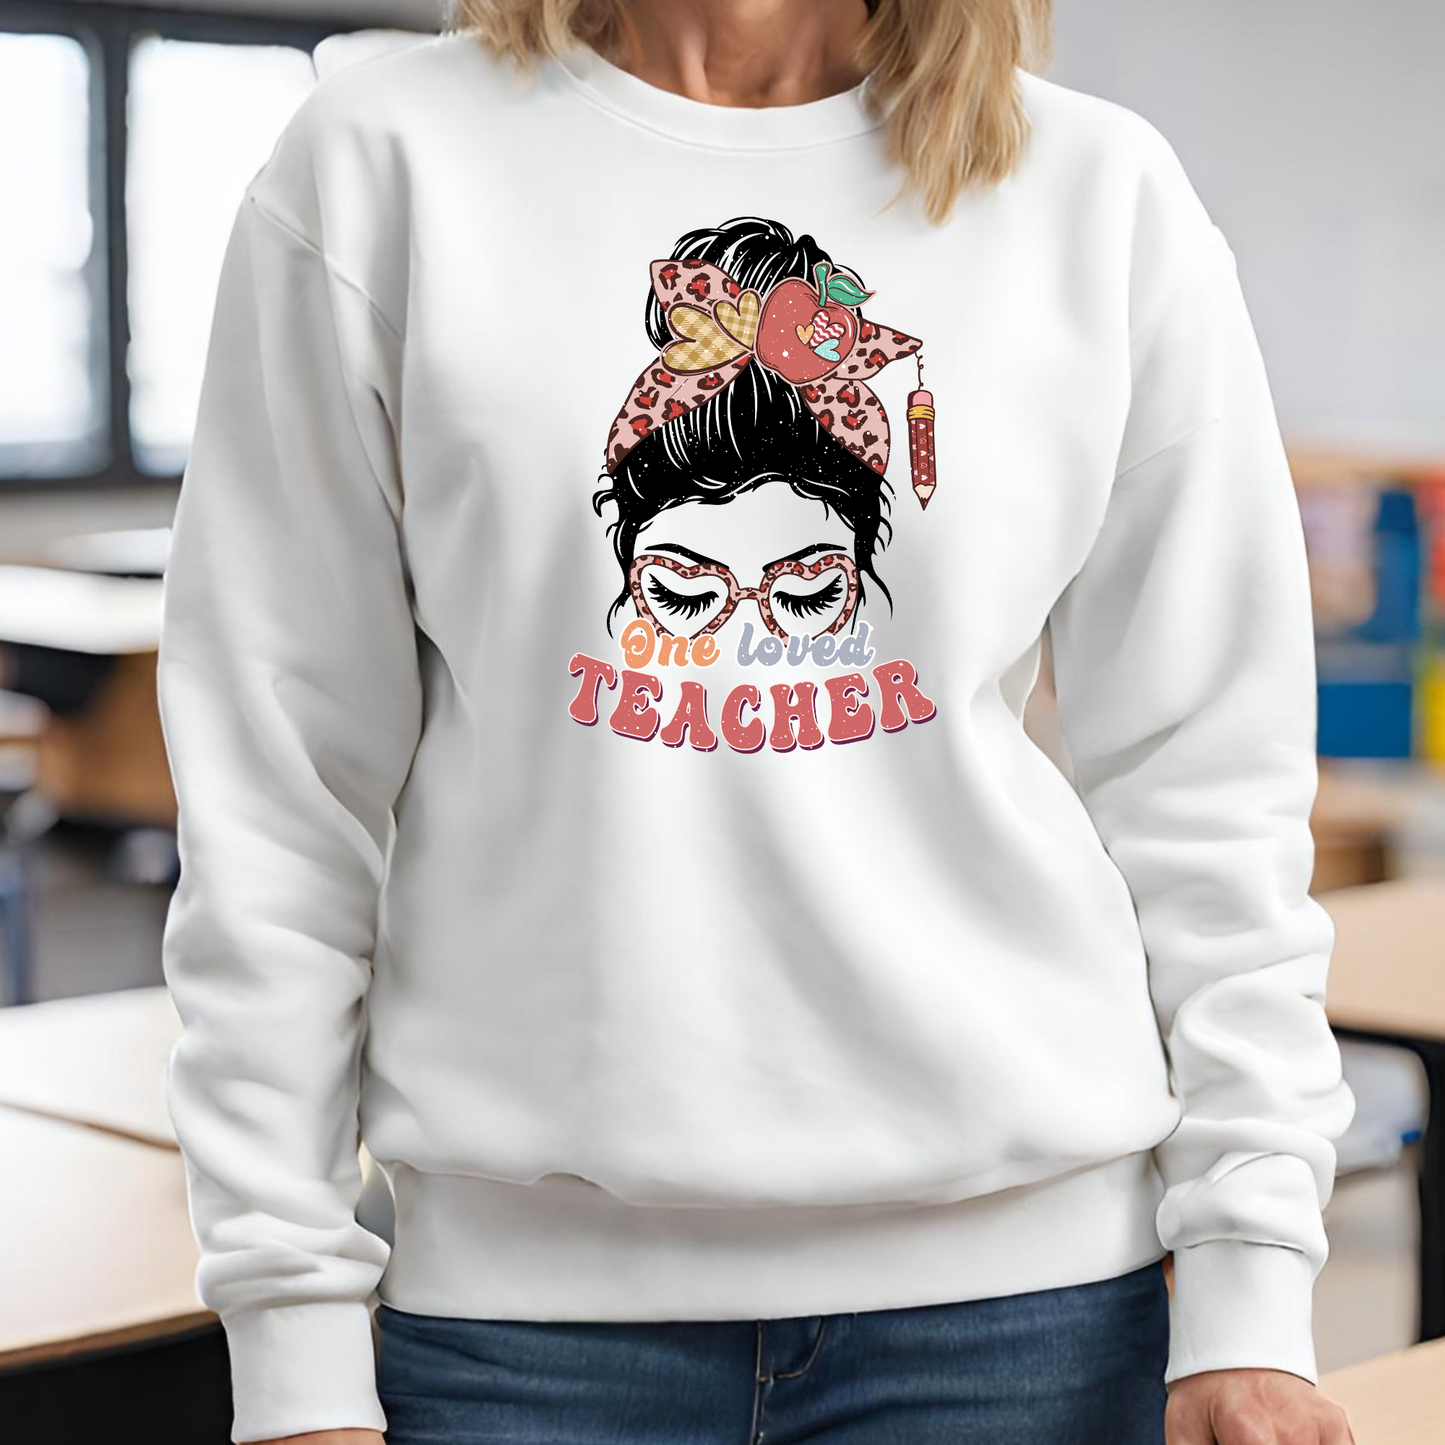 One Loved Teacher | Gift For Teacher